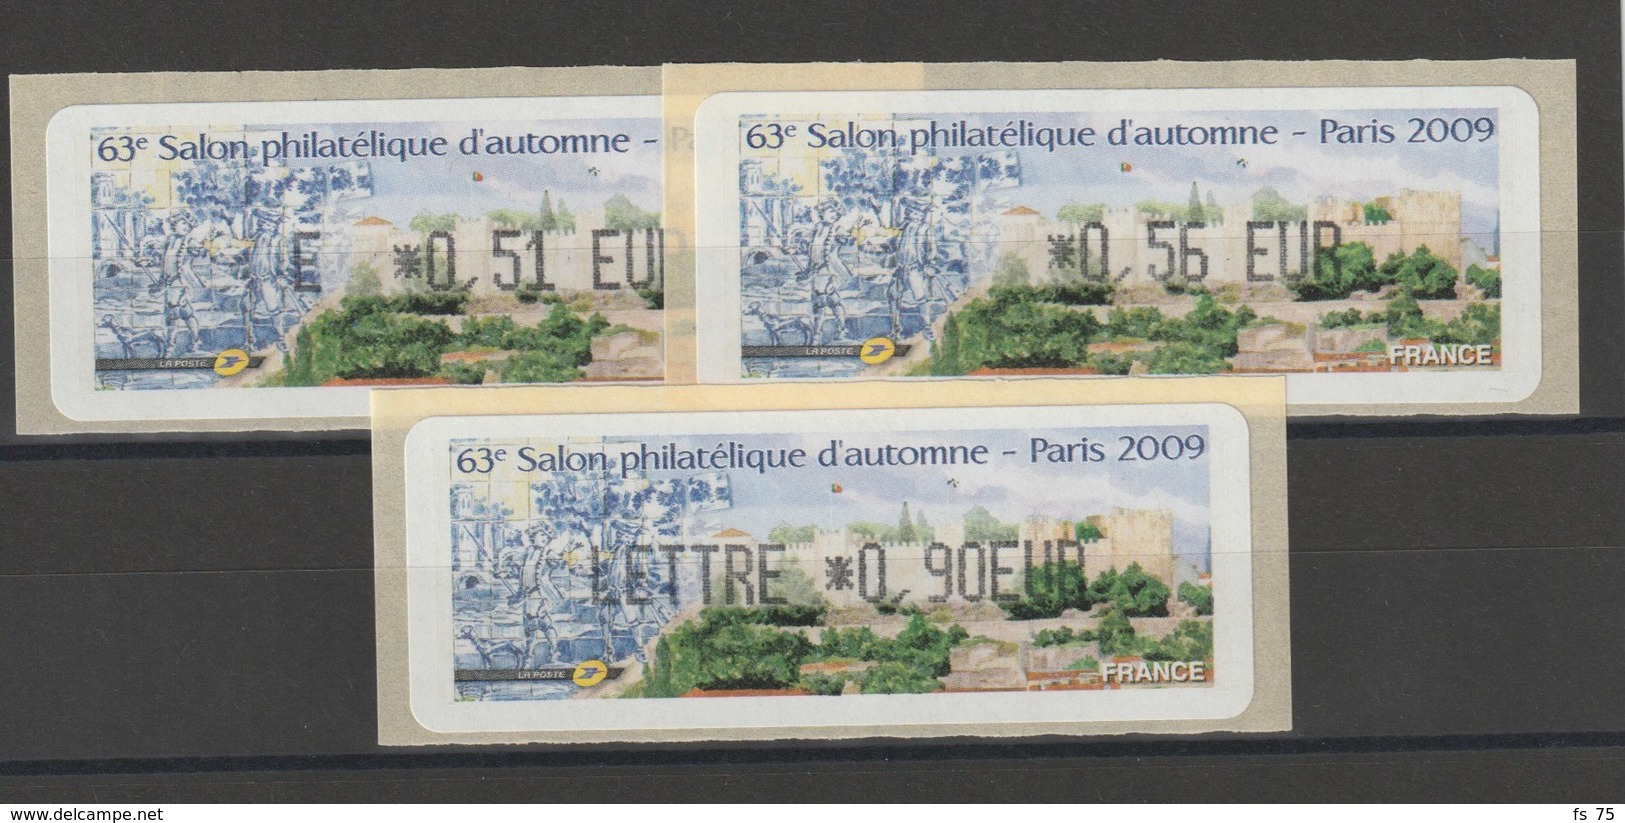 FRANCE - 3 VIGNETTES 0,51€, 0,56€ ET 0,90€ - 63E SALON PHILATELIQUE D'AUTOMNE - PARIS 2009 - 1999-2009 Vignettes Illustrées